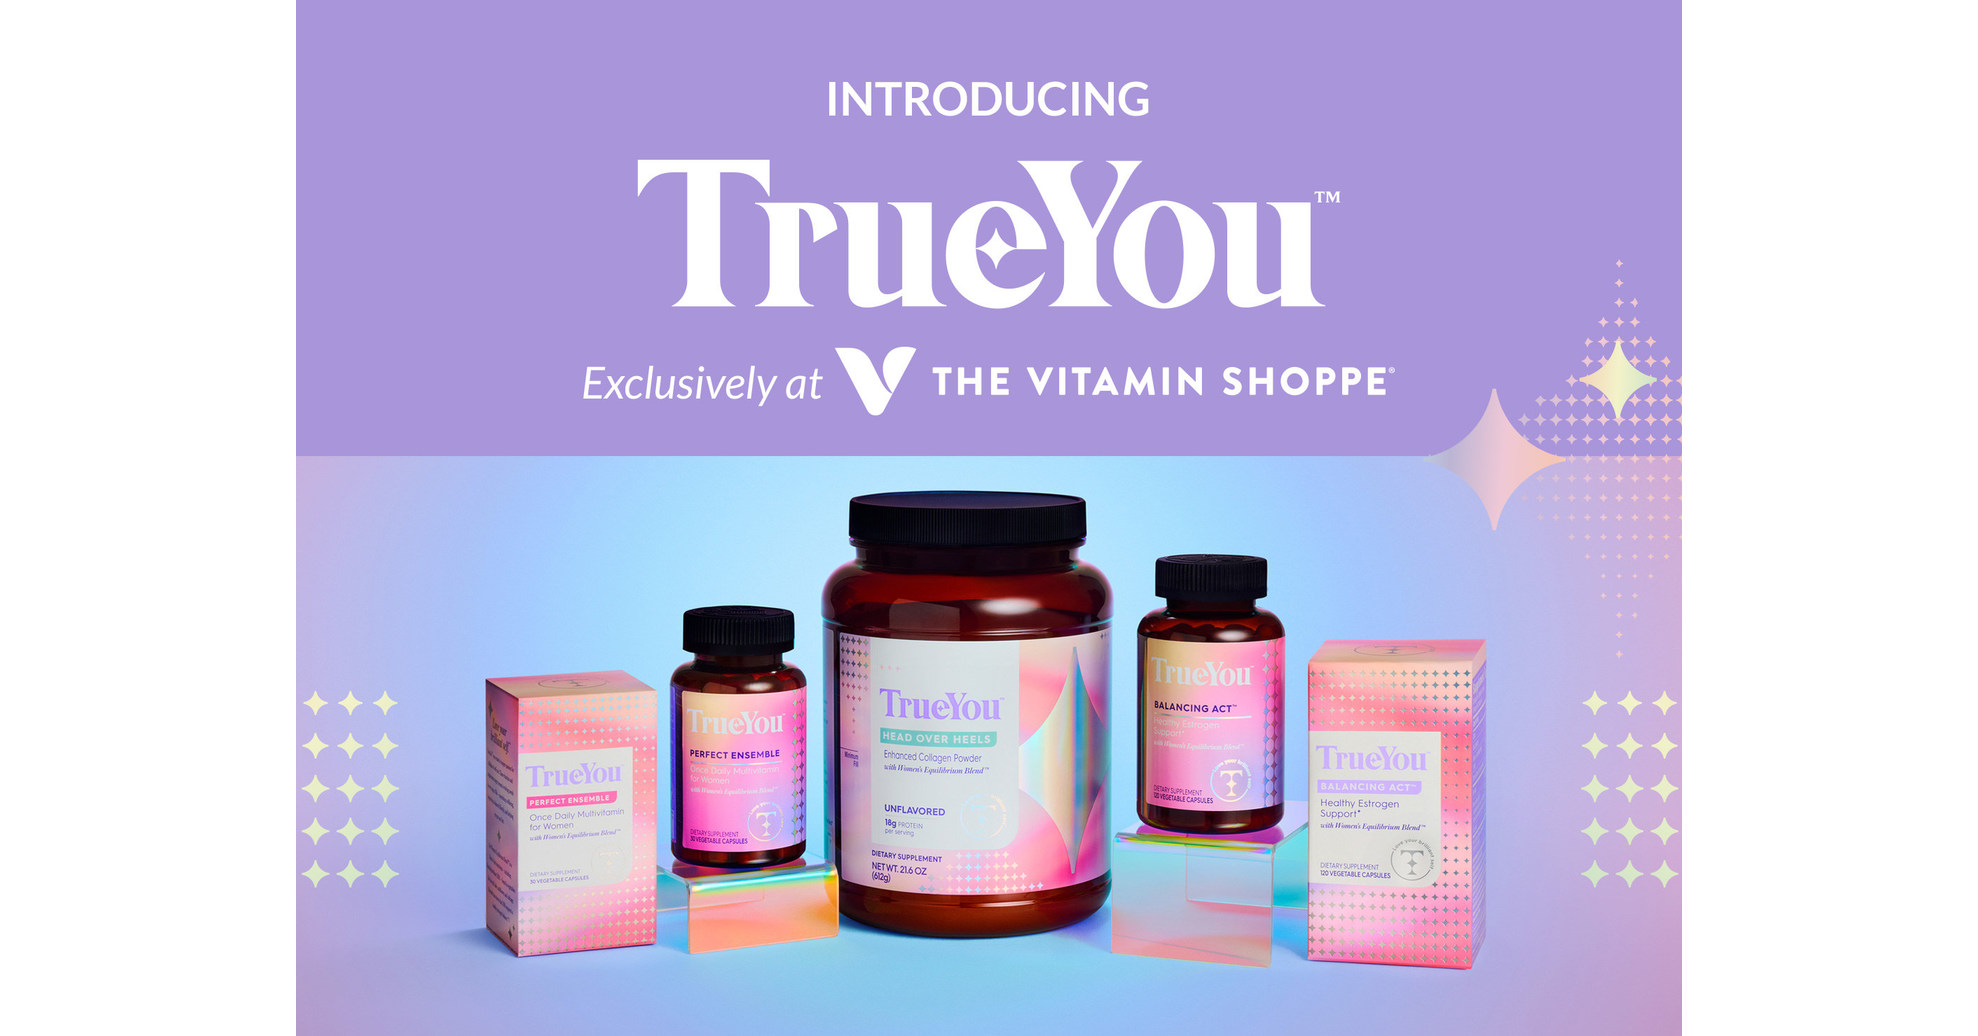 https://mma.prnewswire.com/media/1741062/The_Vitamin_Shoppe_TrueYou.jpg?p=facebook